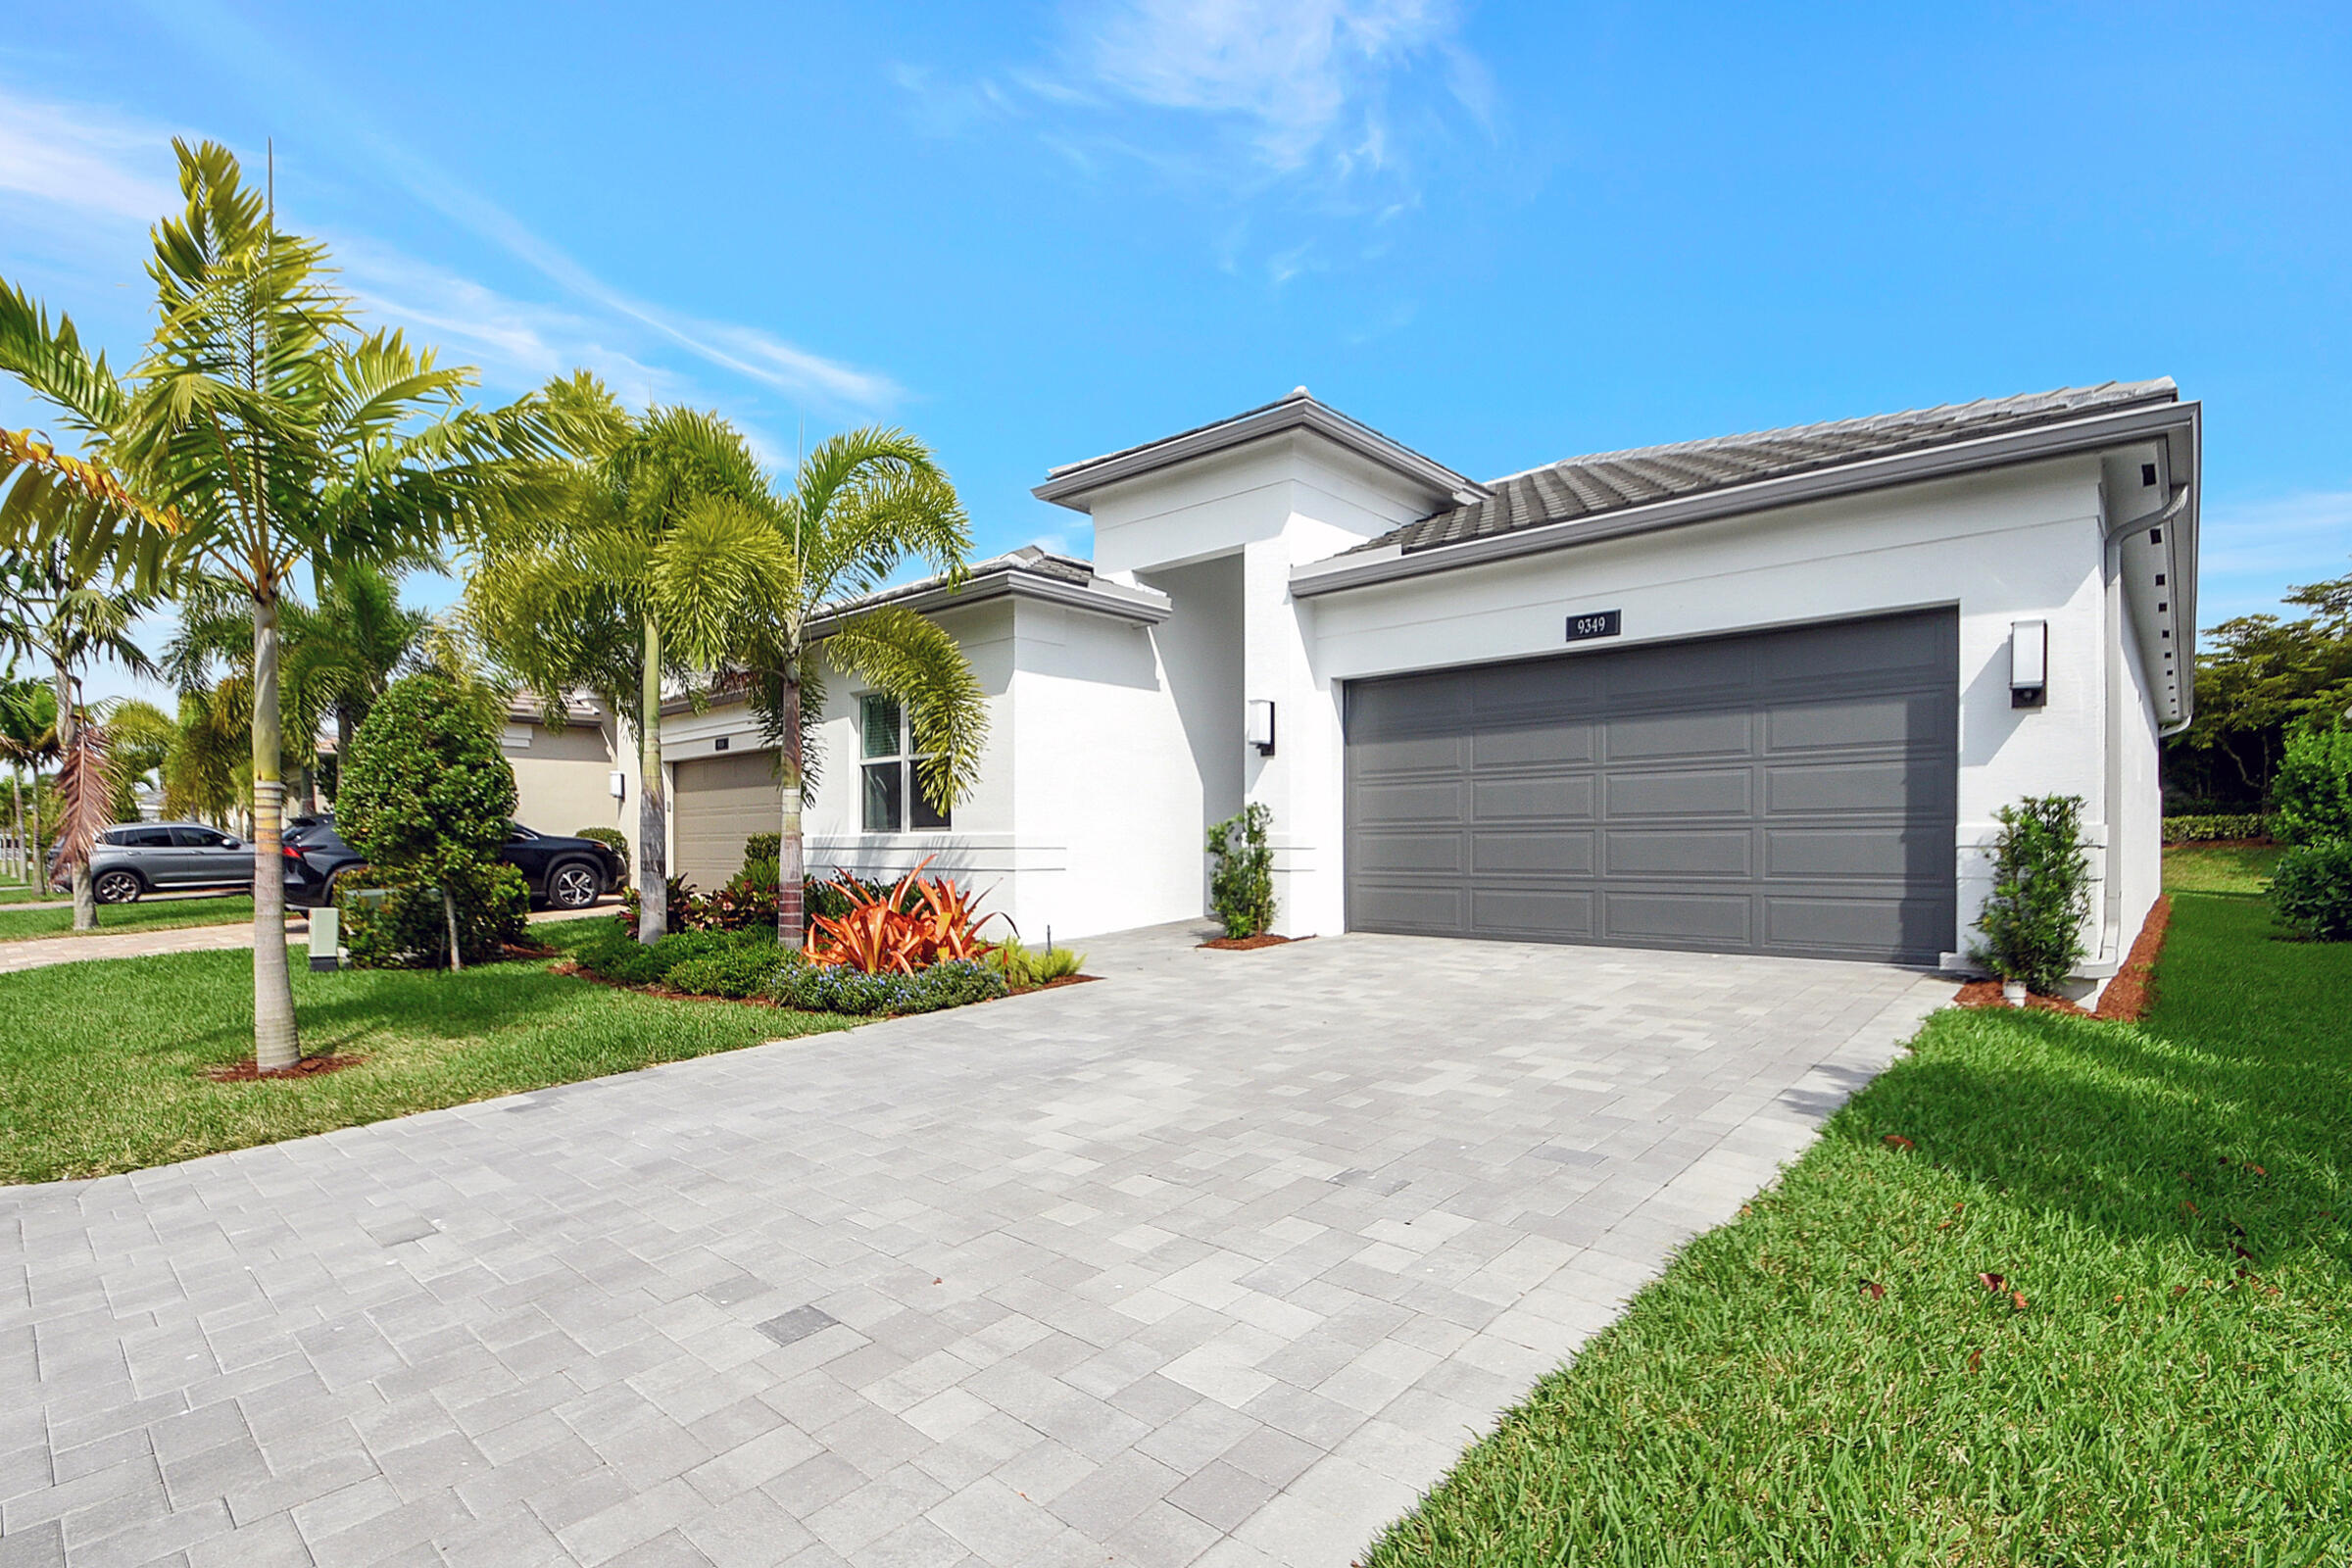 Property for Sale at 9349 Silver Shores Lane, Boynton Beach, Palm Beach County, Florida - Bedrooms: 3 
Bathrooms: 2  - $799,900